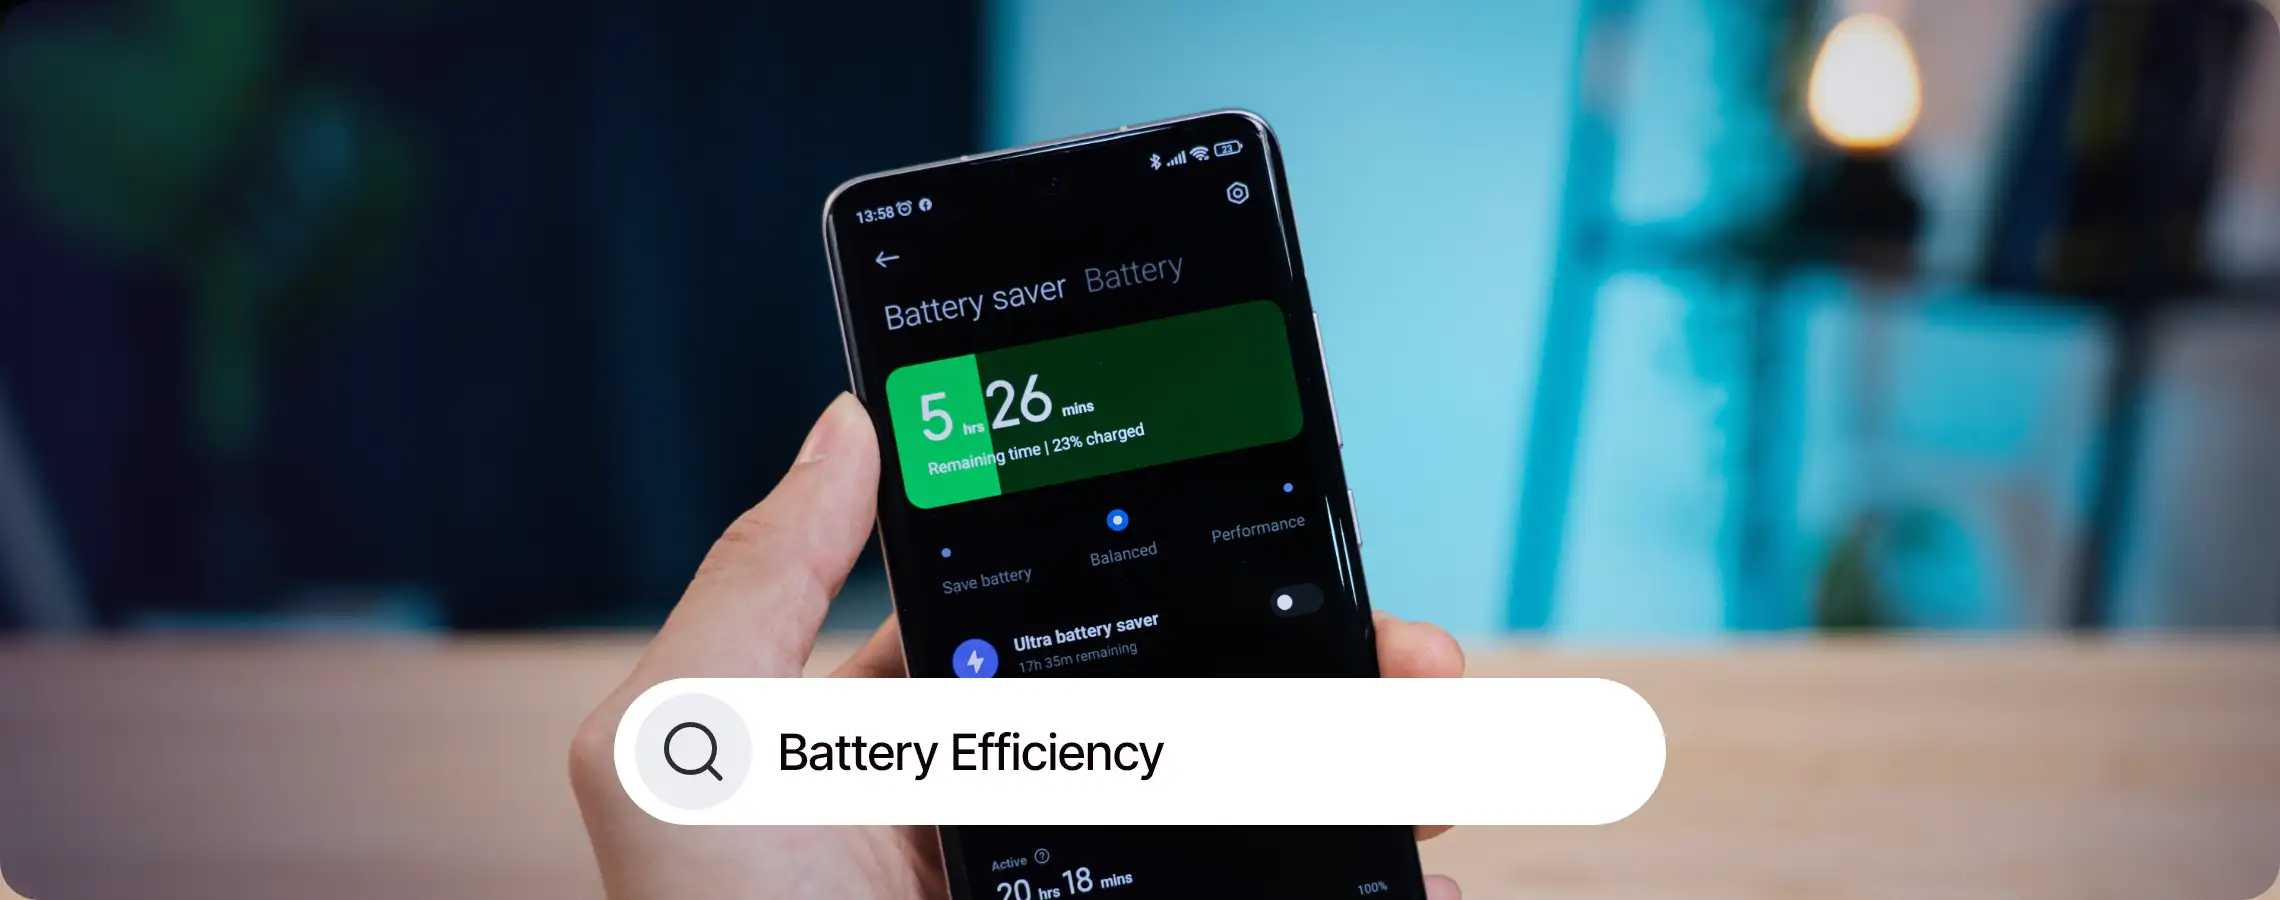 Battery Efficiency